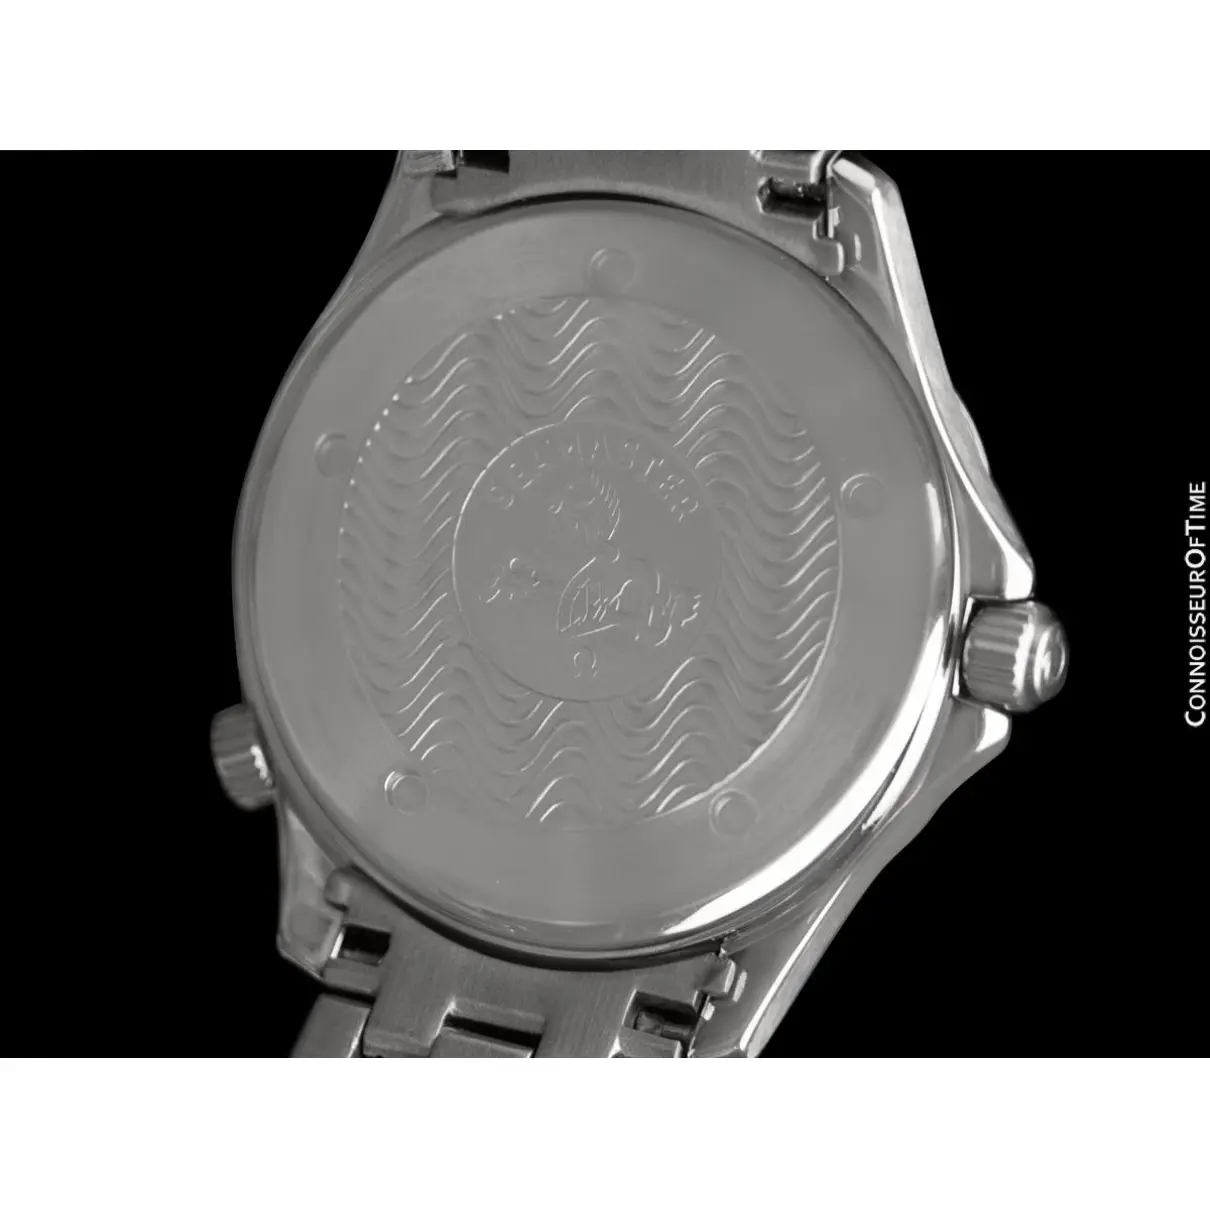 Buy Omega Seamaster 300 Chronographe watch online